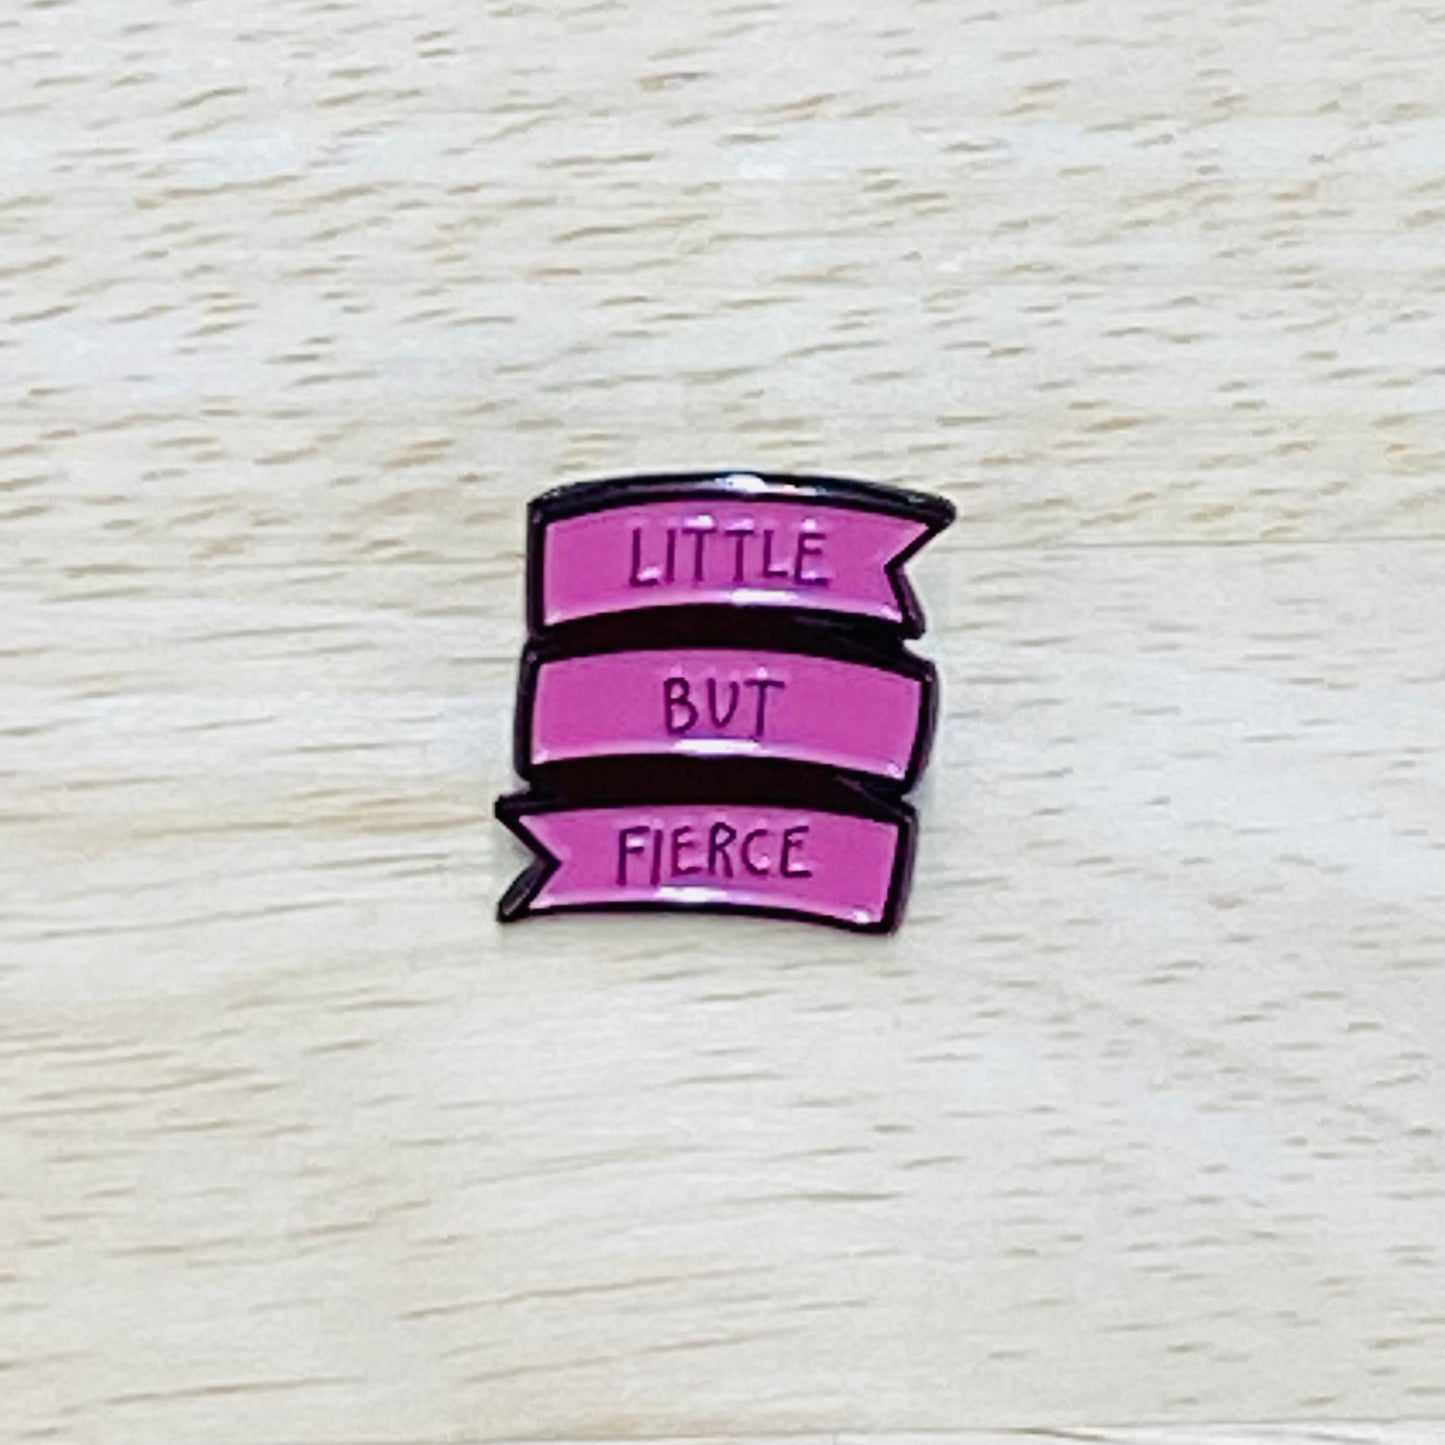 Inspirational Pins - Little But Fierce